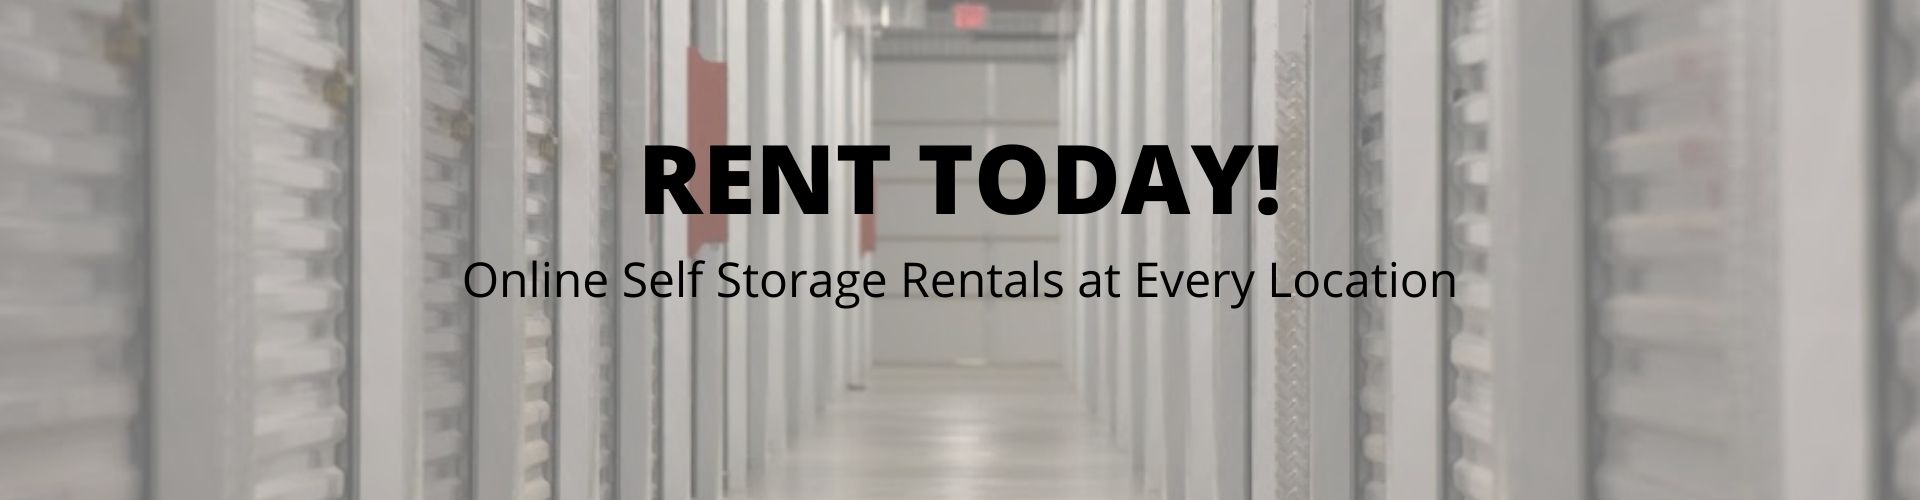 online storage rentals at Hogan Self Storage in Pennington NJ